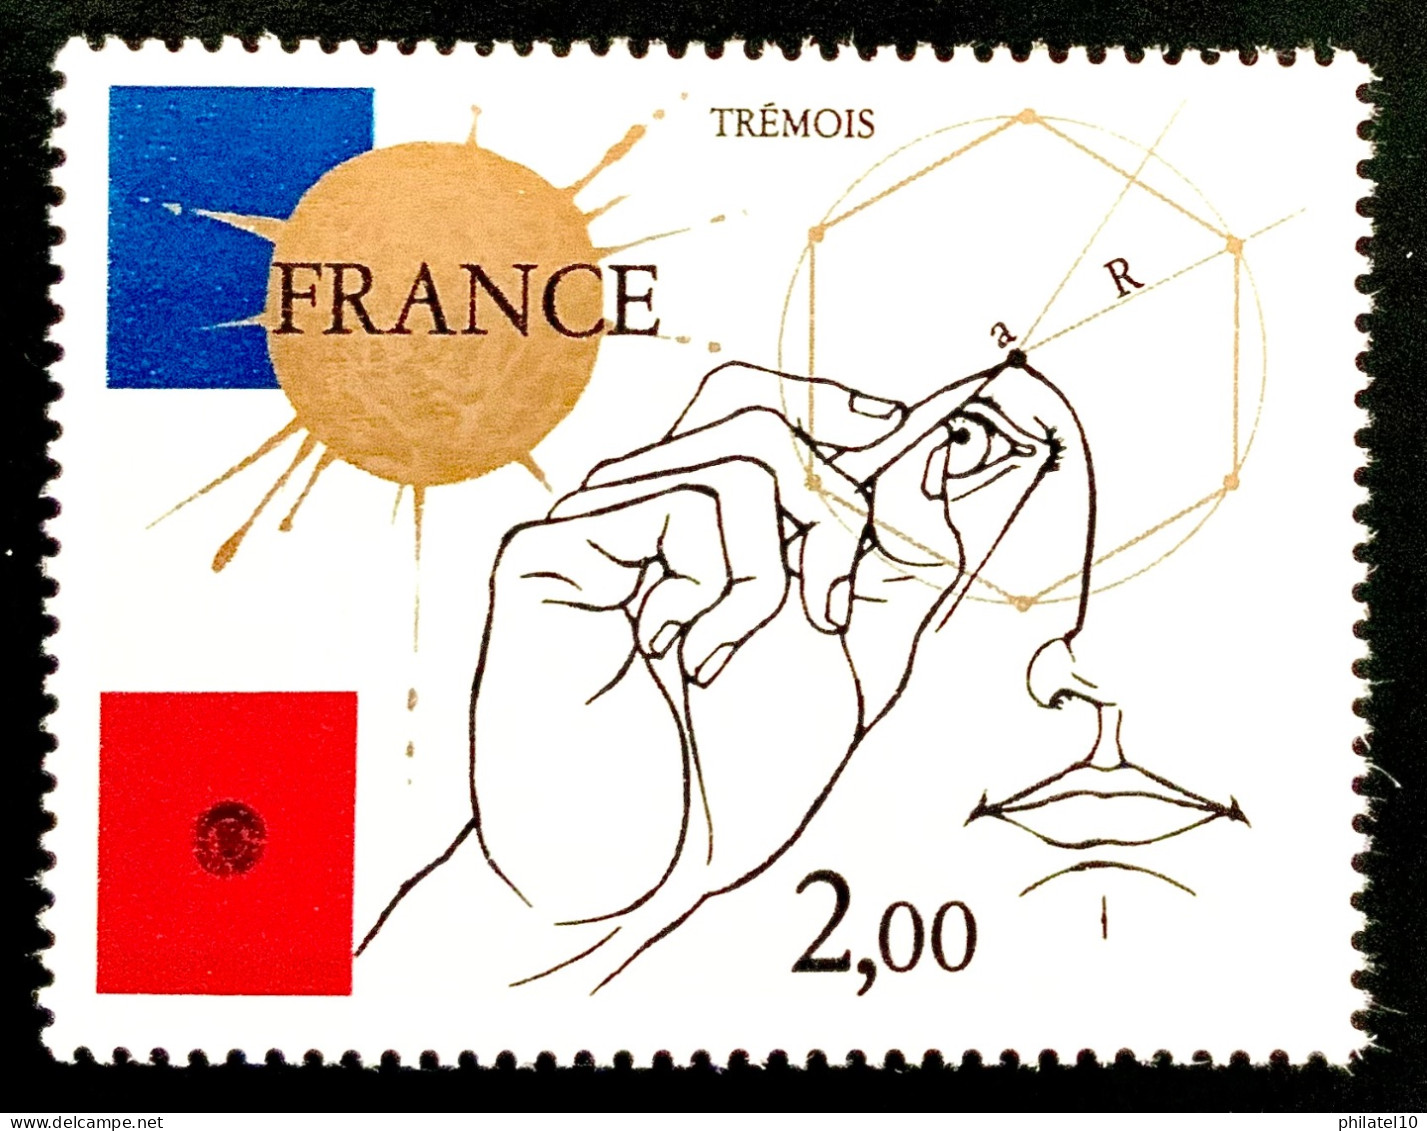 1981 FRANCE N 2141 TREMOIS 2,00F - NEUF** - Neufs